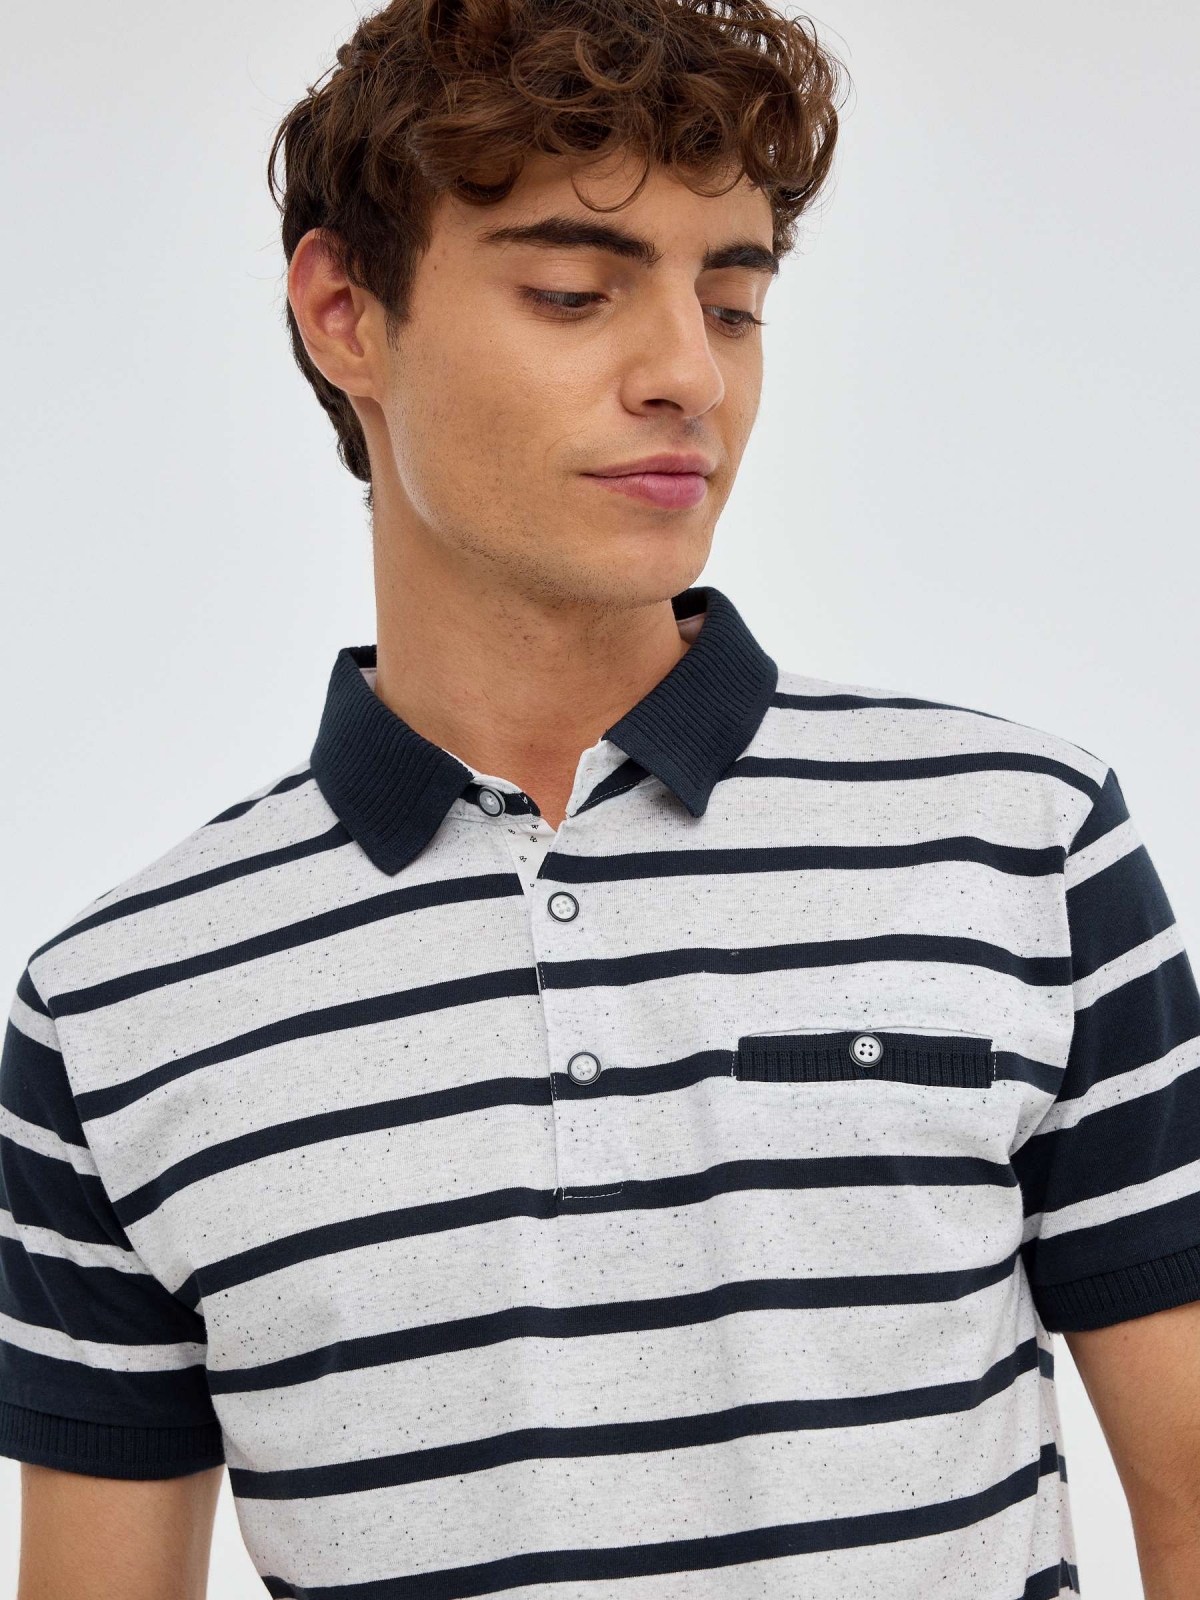 Sailor striped polo shirt | Men's Polo Shirts | INSIDE